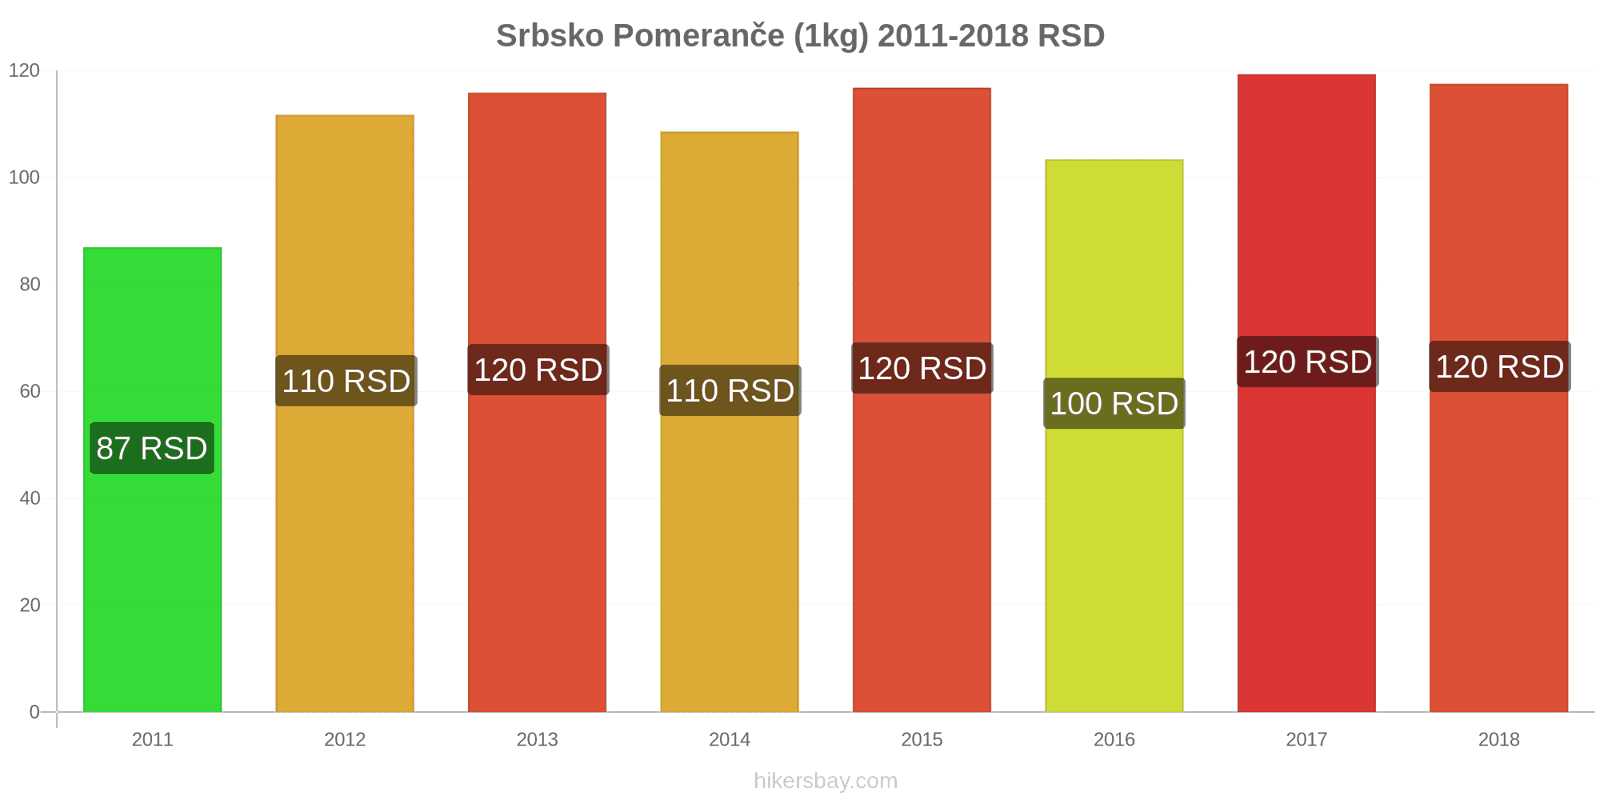 Srbsko změny cen Pomeranče (1kg) hikersbay.com